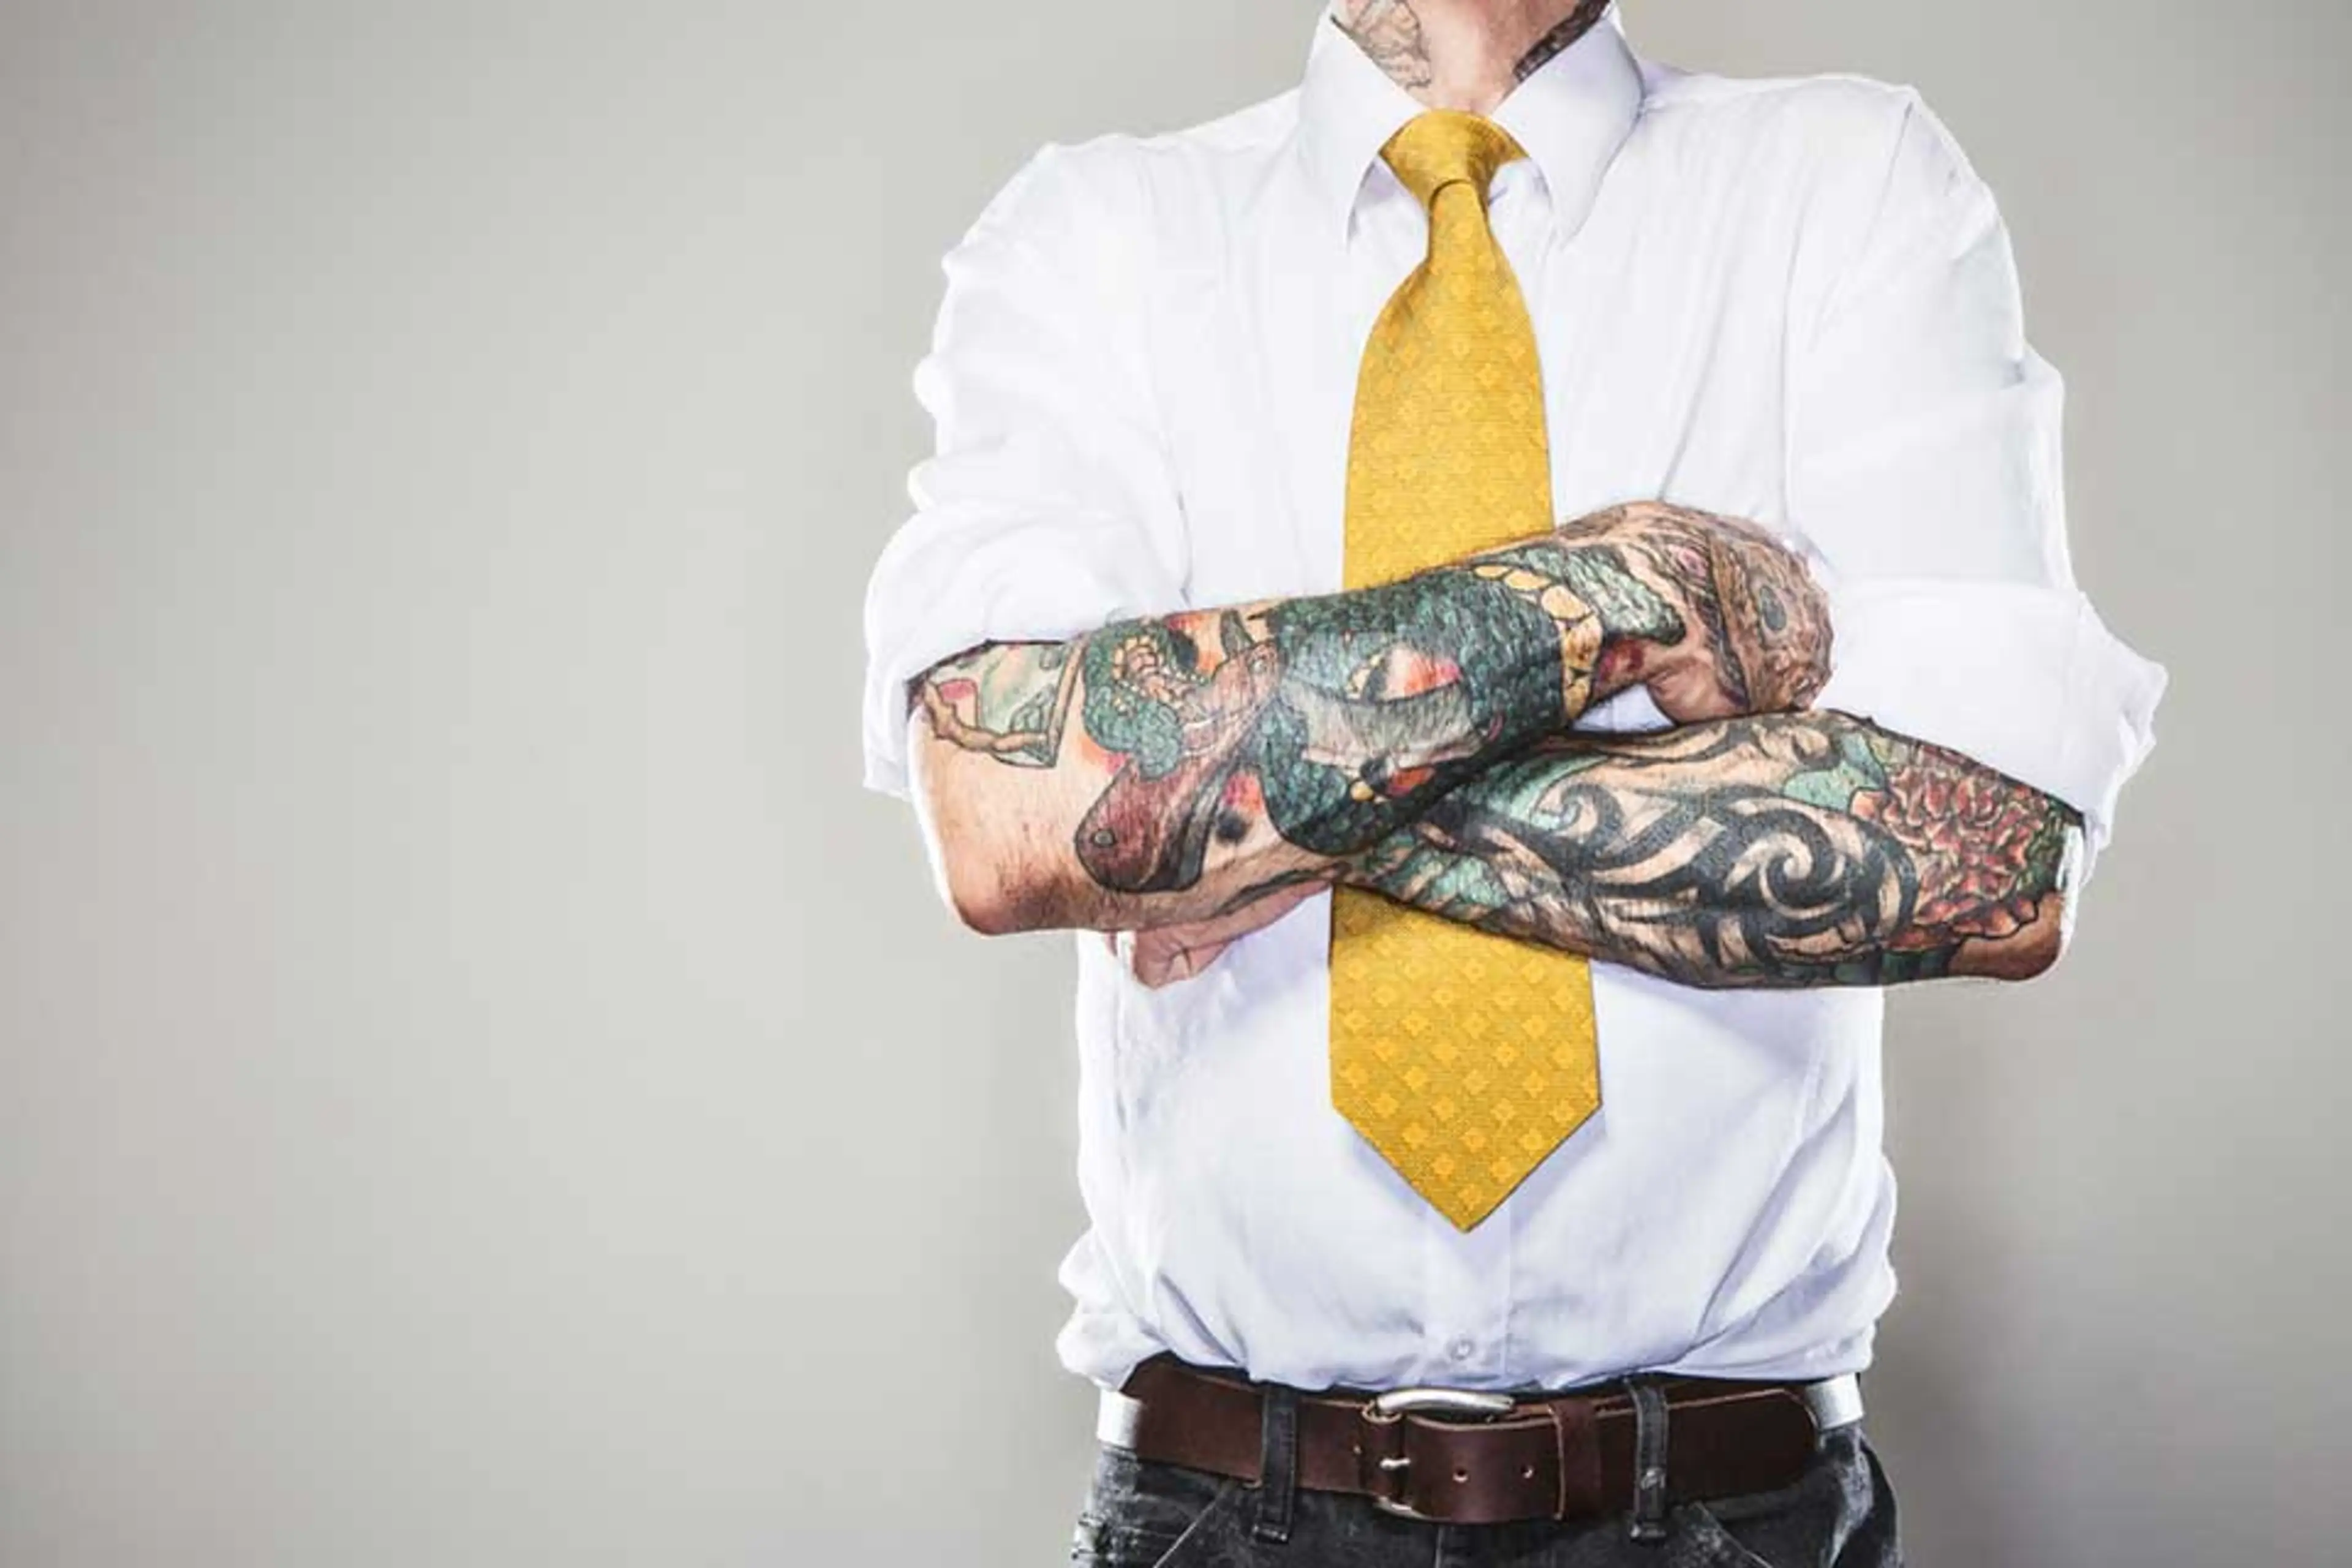 Mann med tatoveringer i businessklær